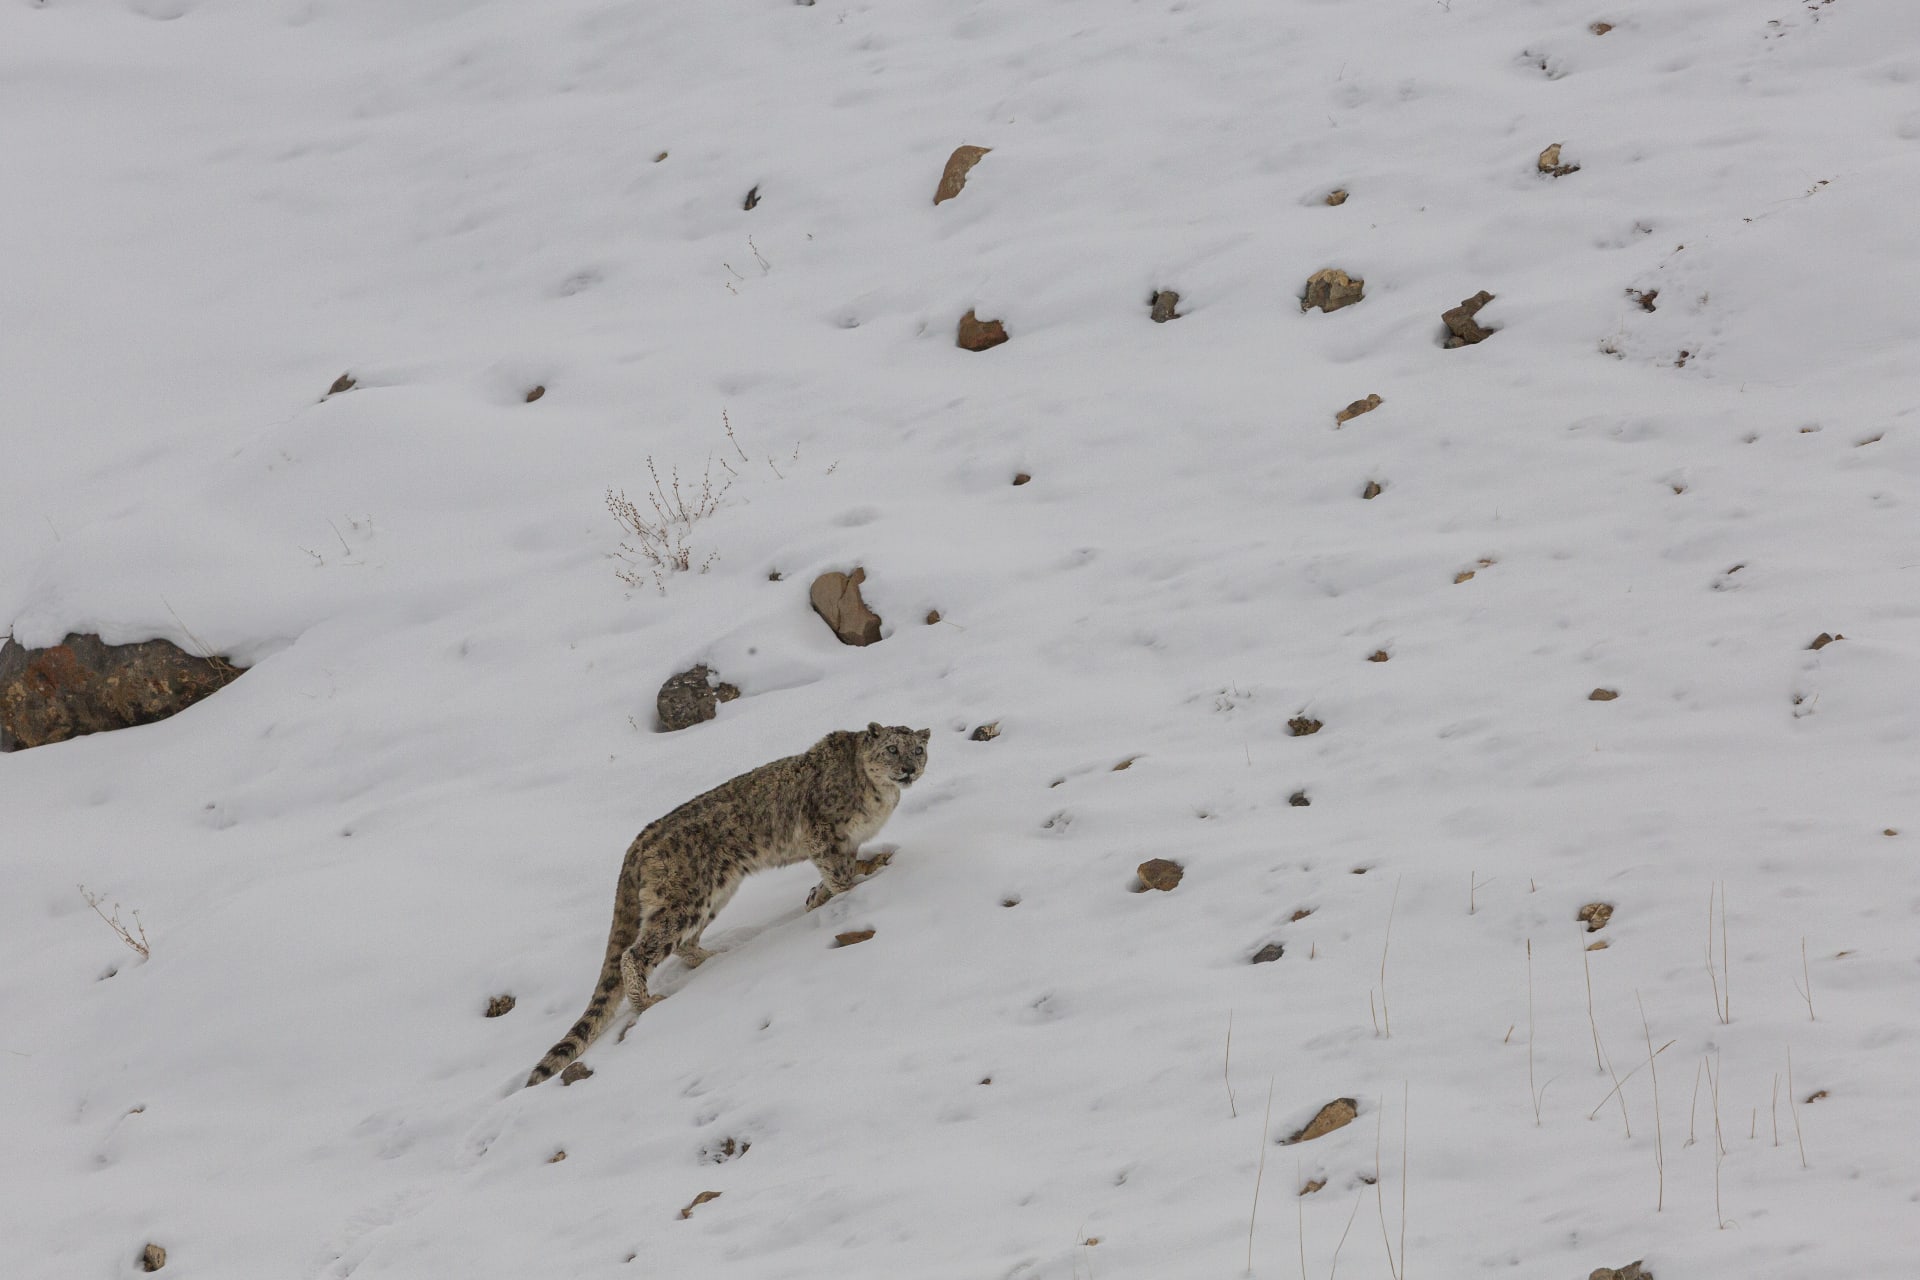     Un indio destaca las capacidades de camuflaje de los leopardos de las nieves. ¿Puedes verlos en estas imágenes?